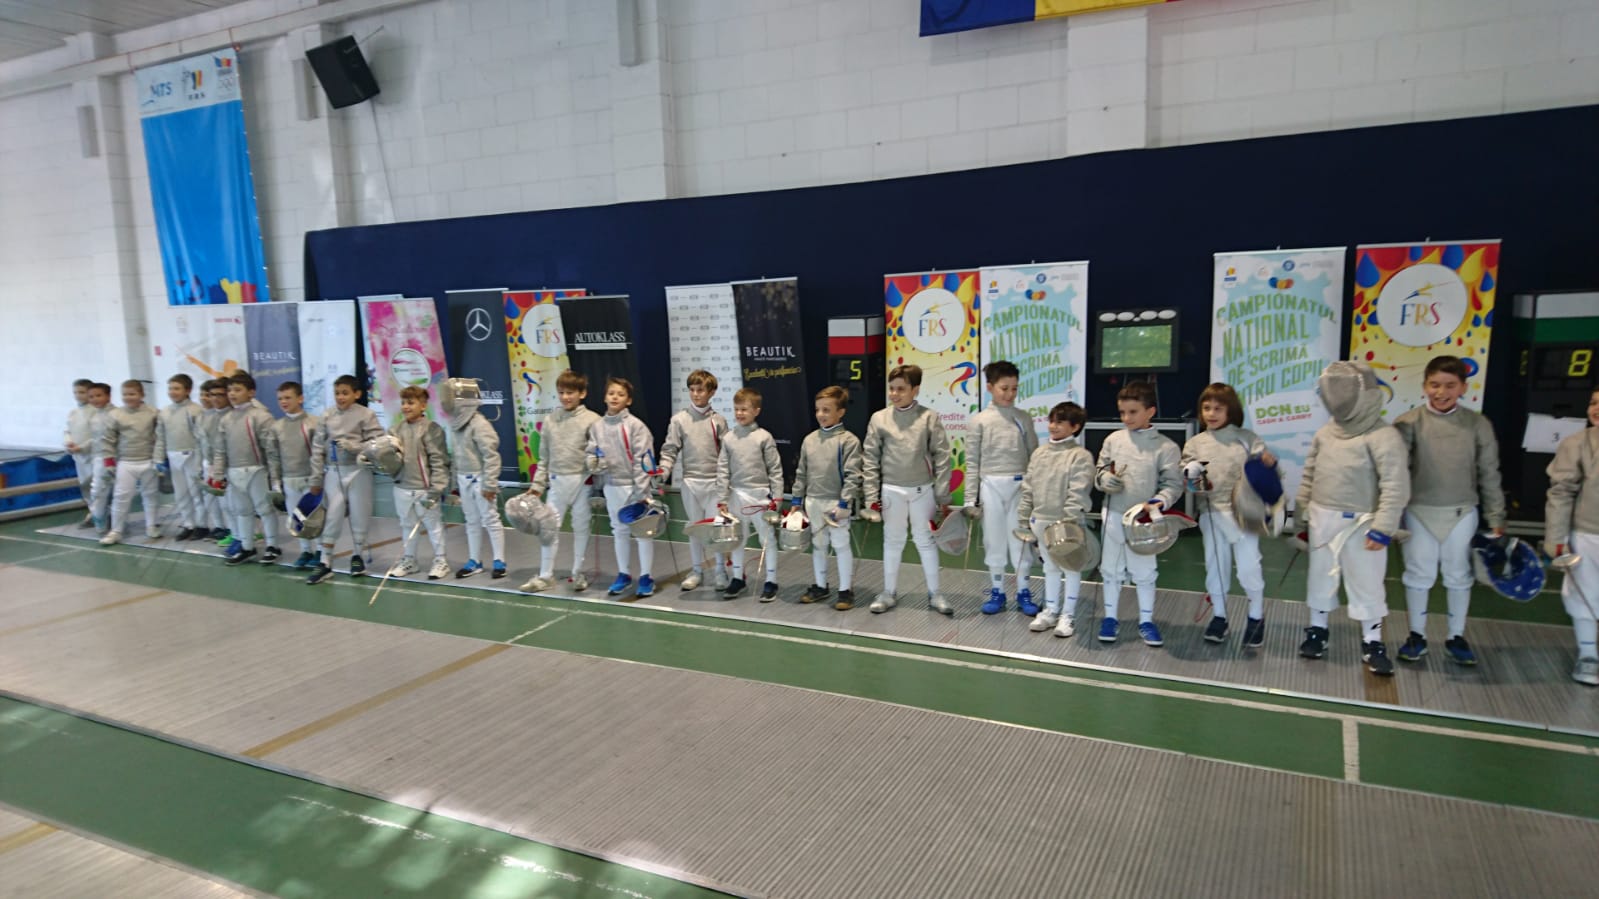 LIVE: Campionatul Național de scrimă pentru copii de la București, ediția 2018, ziua 10: azi au loc probele de sabie masculin la 8-9 ani și pe echipe